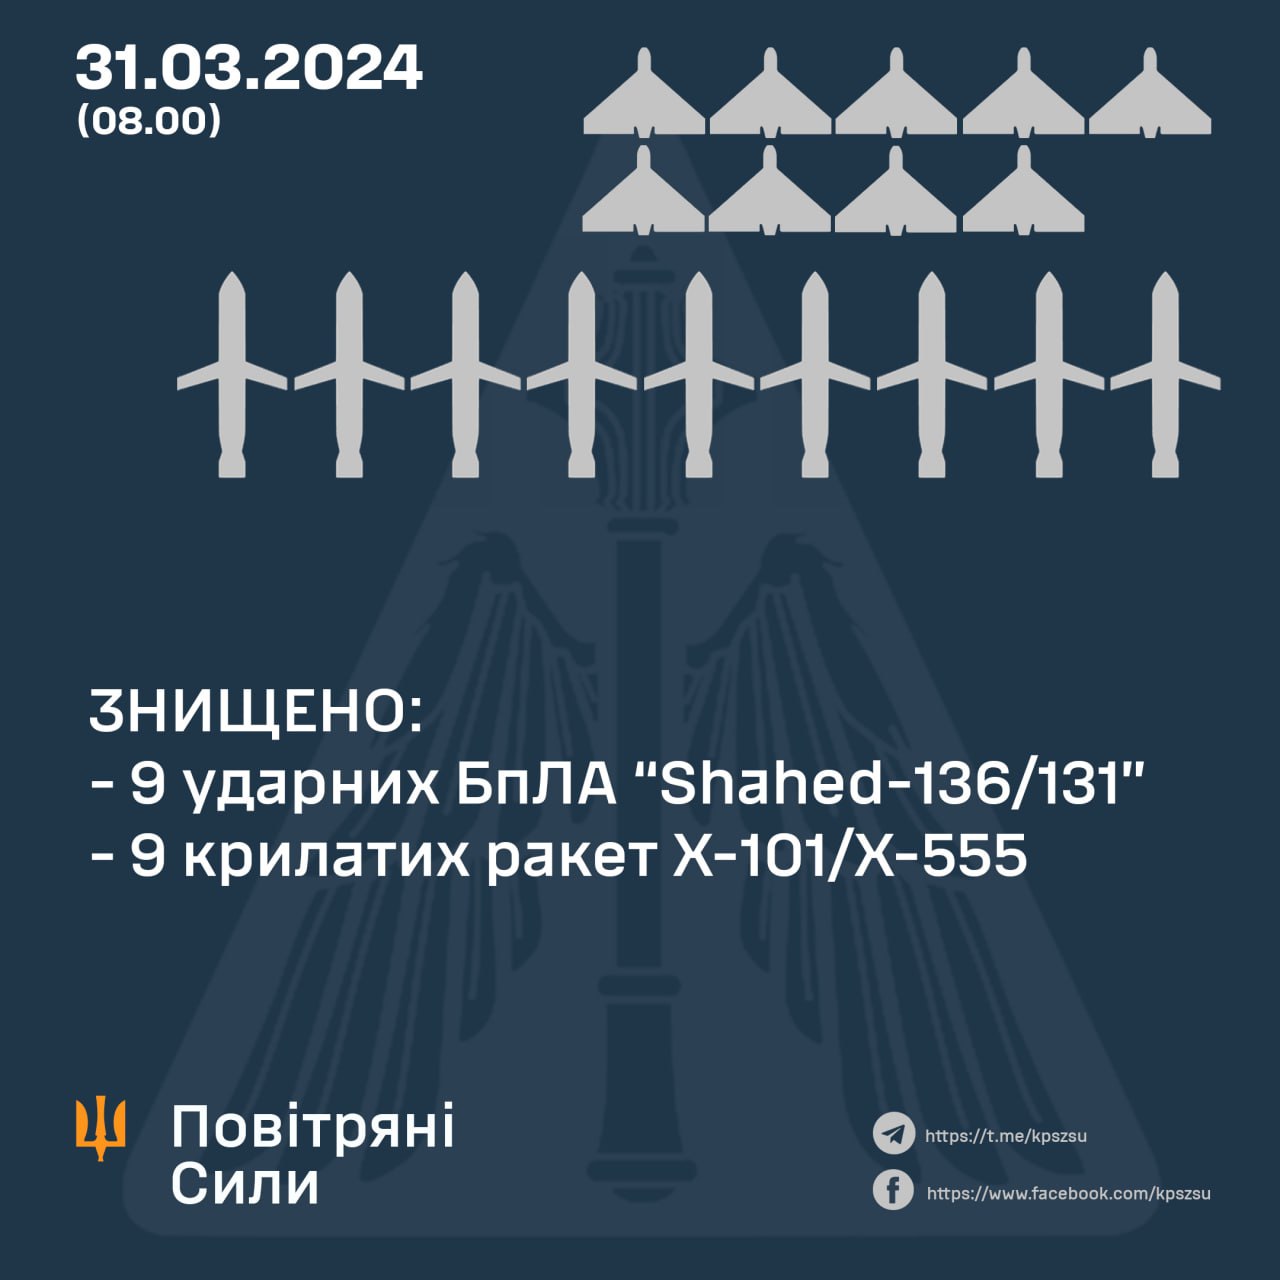 Силы обороны отчитались о работе ПВО 31 марта: сбито 9 ракет и 9 Шахедов